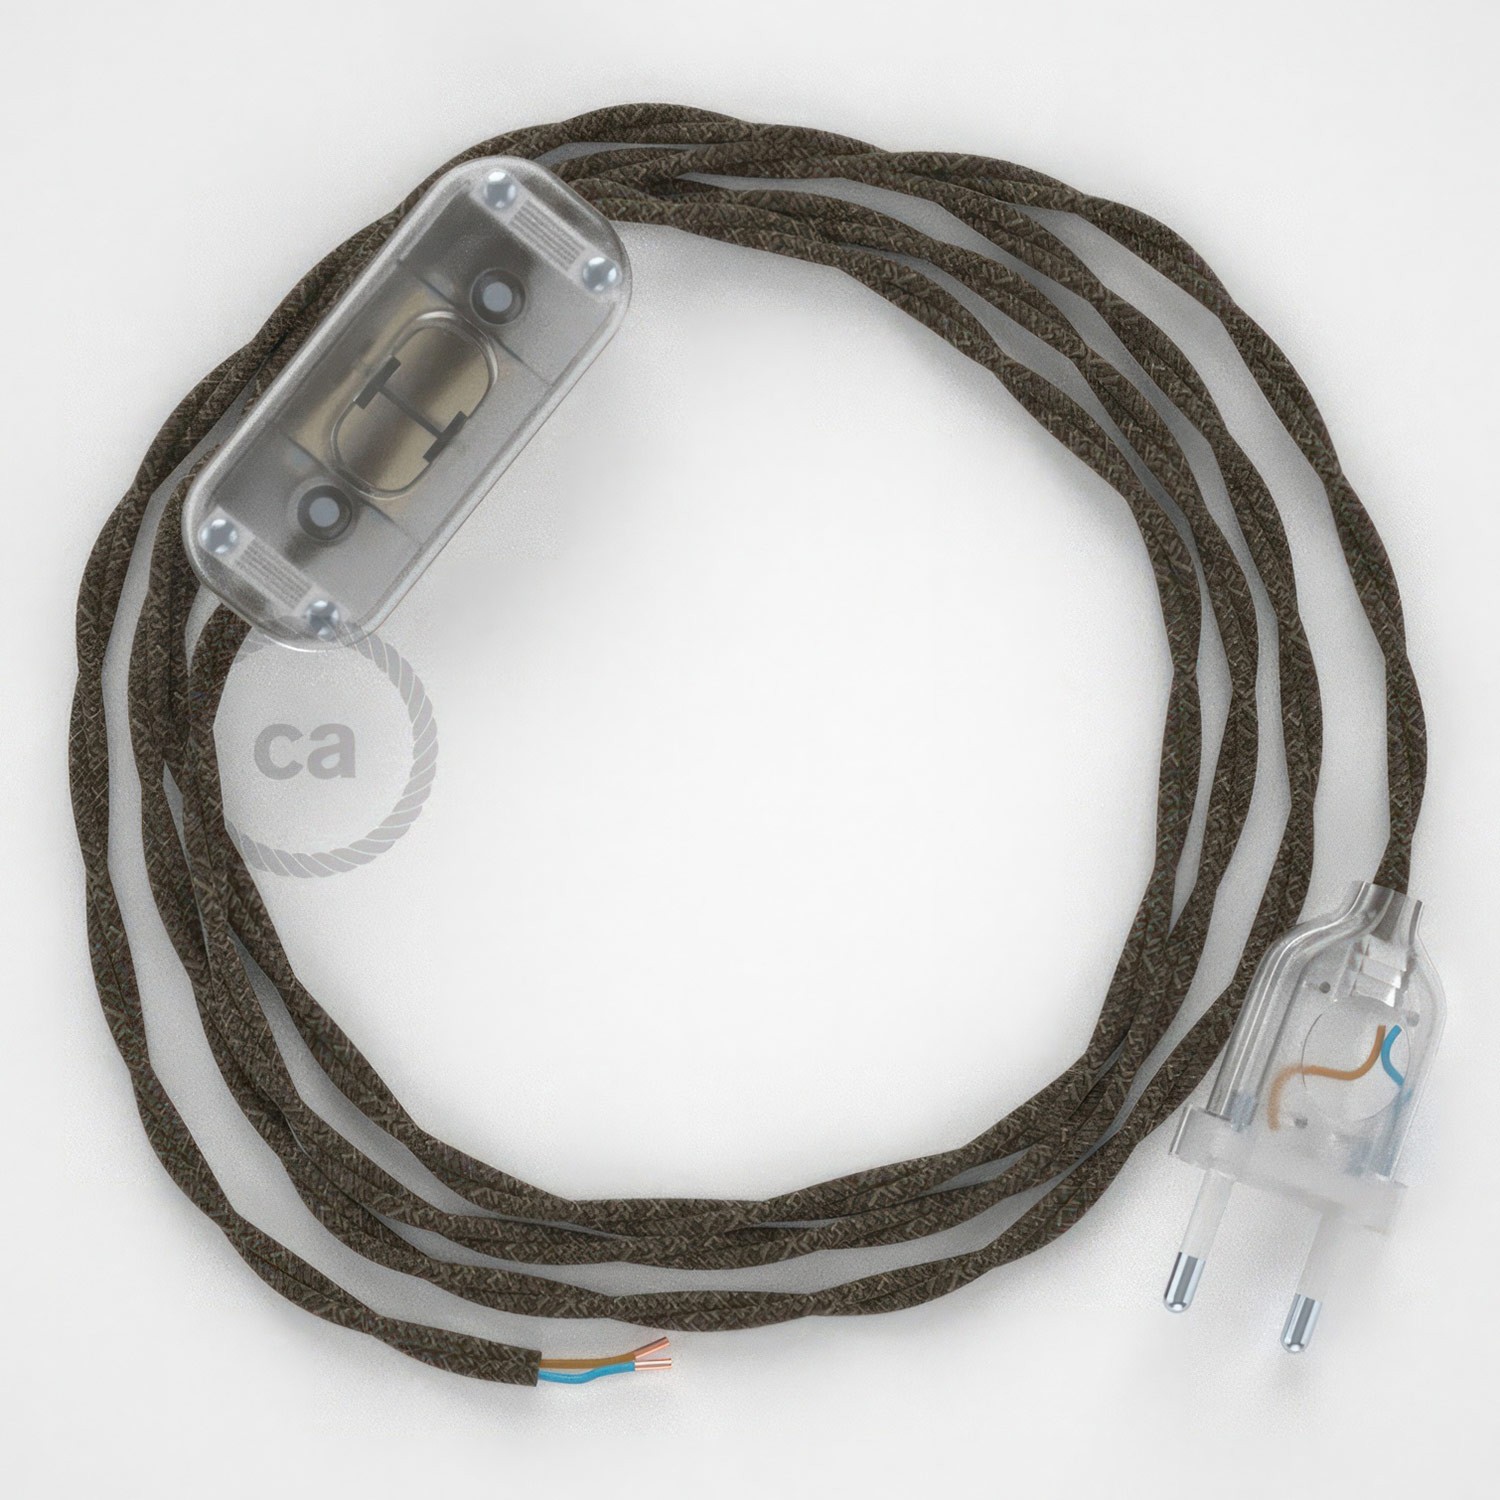 Cableado para lámpara, cable TN04 Lino Natural Marrón 1,8m. Elige tu el color de la clavija y del interruptor!